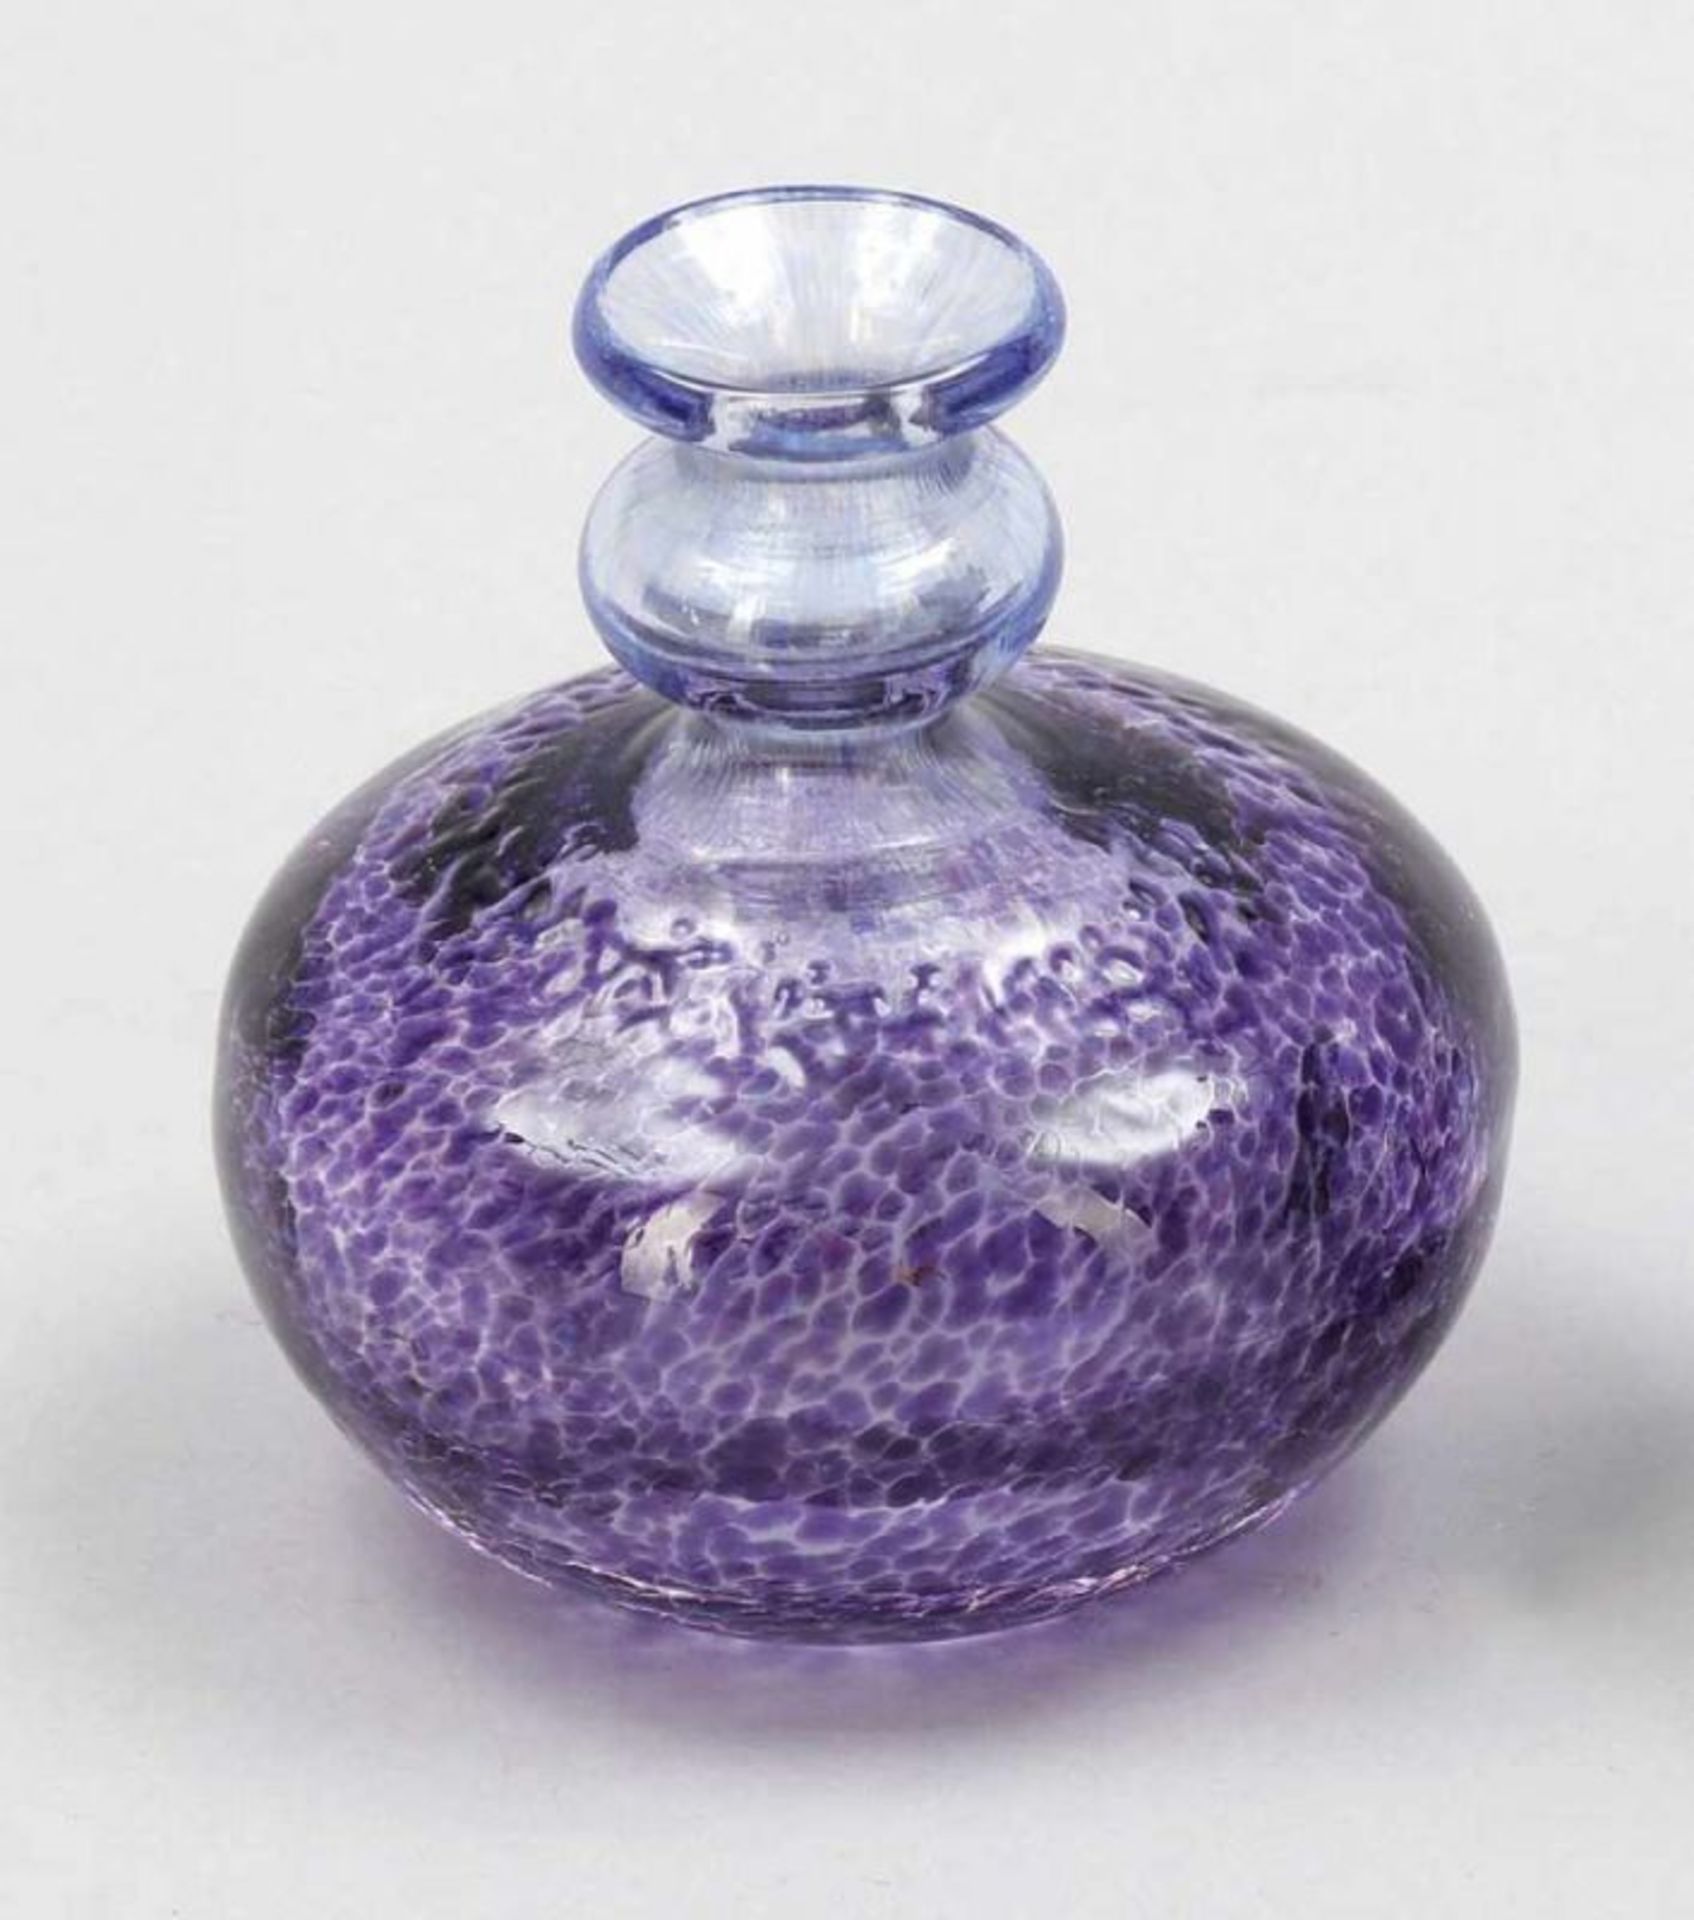 Vase Bertil Vallien für Kosta Boda, Schweden. Farbloses Glas mit violetten und blauen Pulverauf- - Bild 2 aus 2